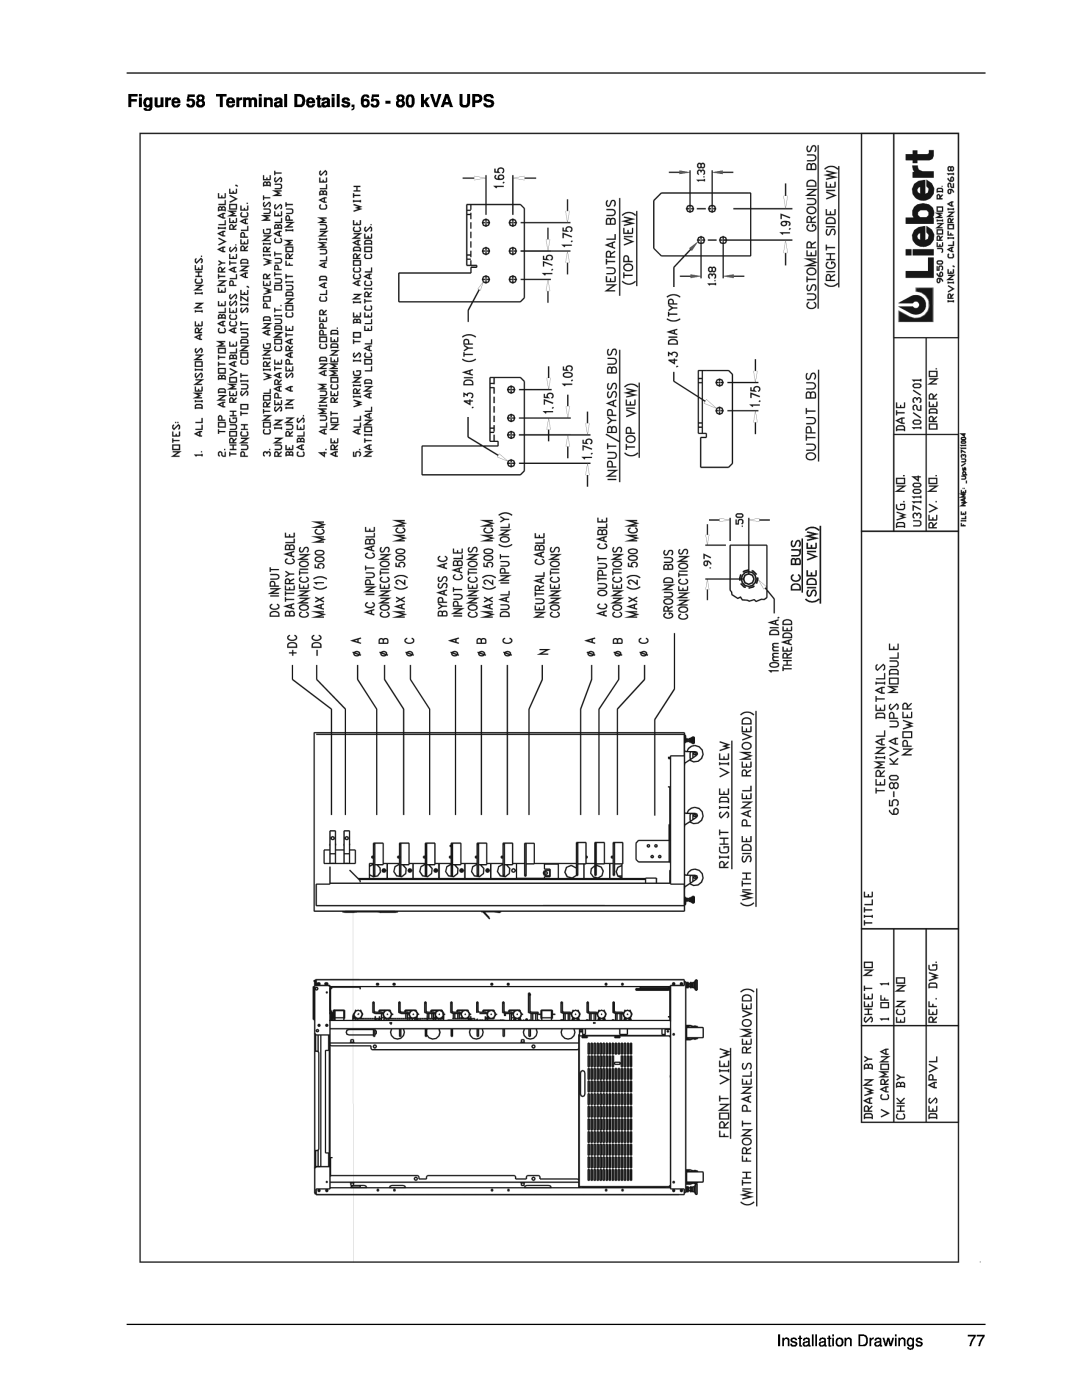 Emerson 30-130 kVA installation manual Terminal Details, 65 - 80 kVA UPS, Installation Drawings 